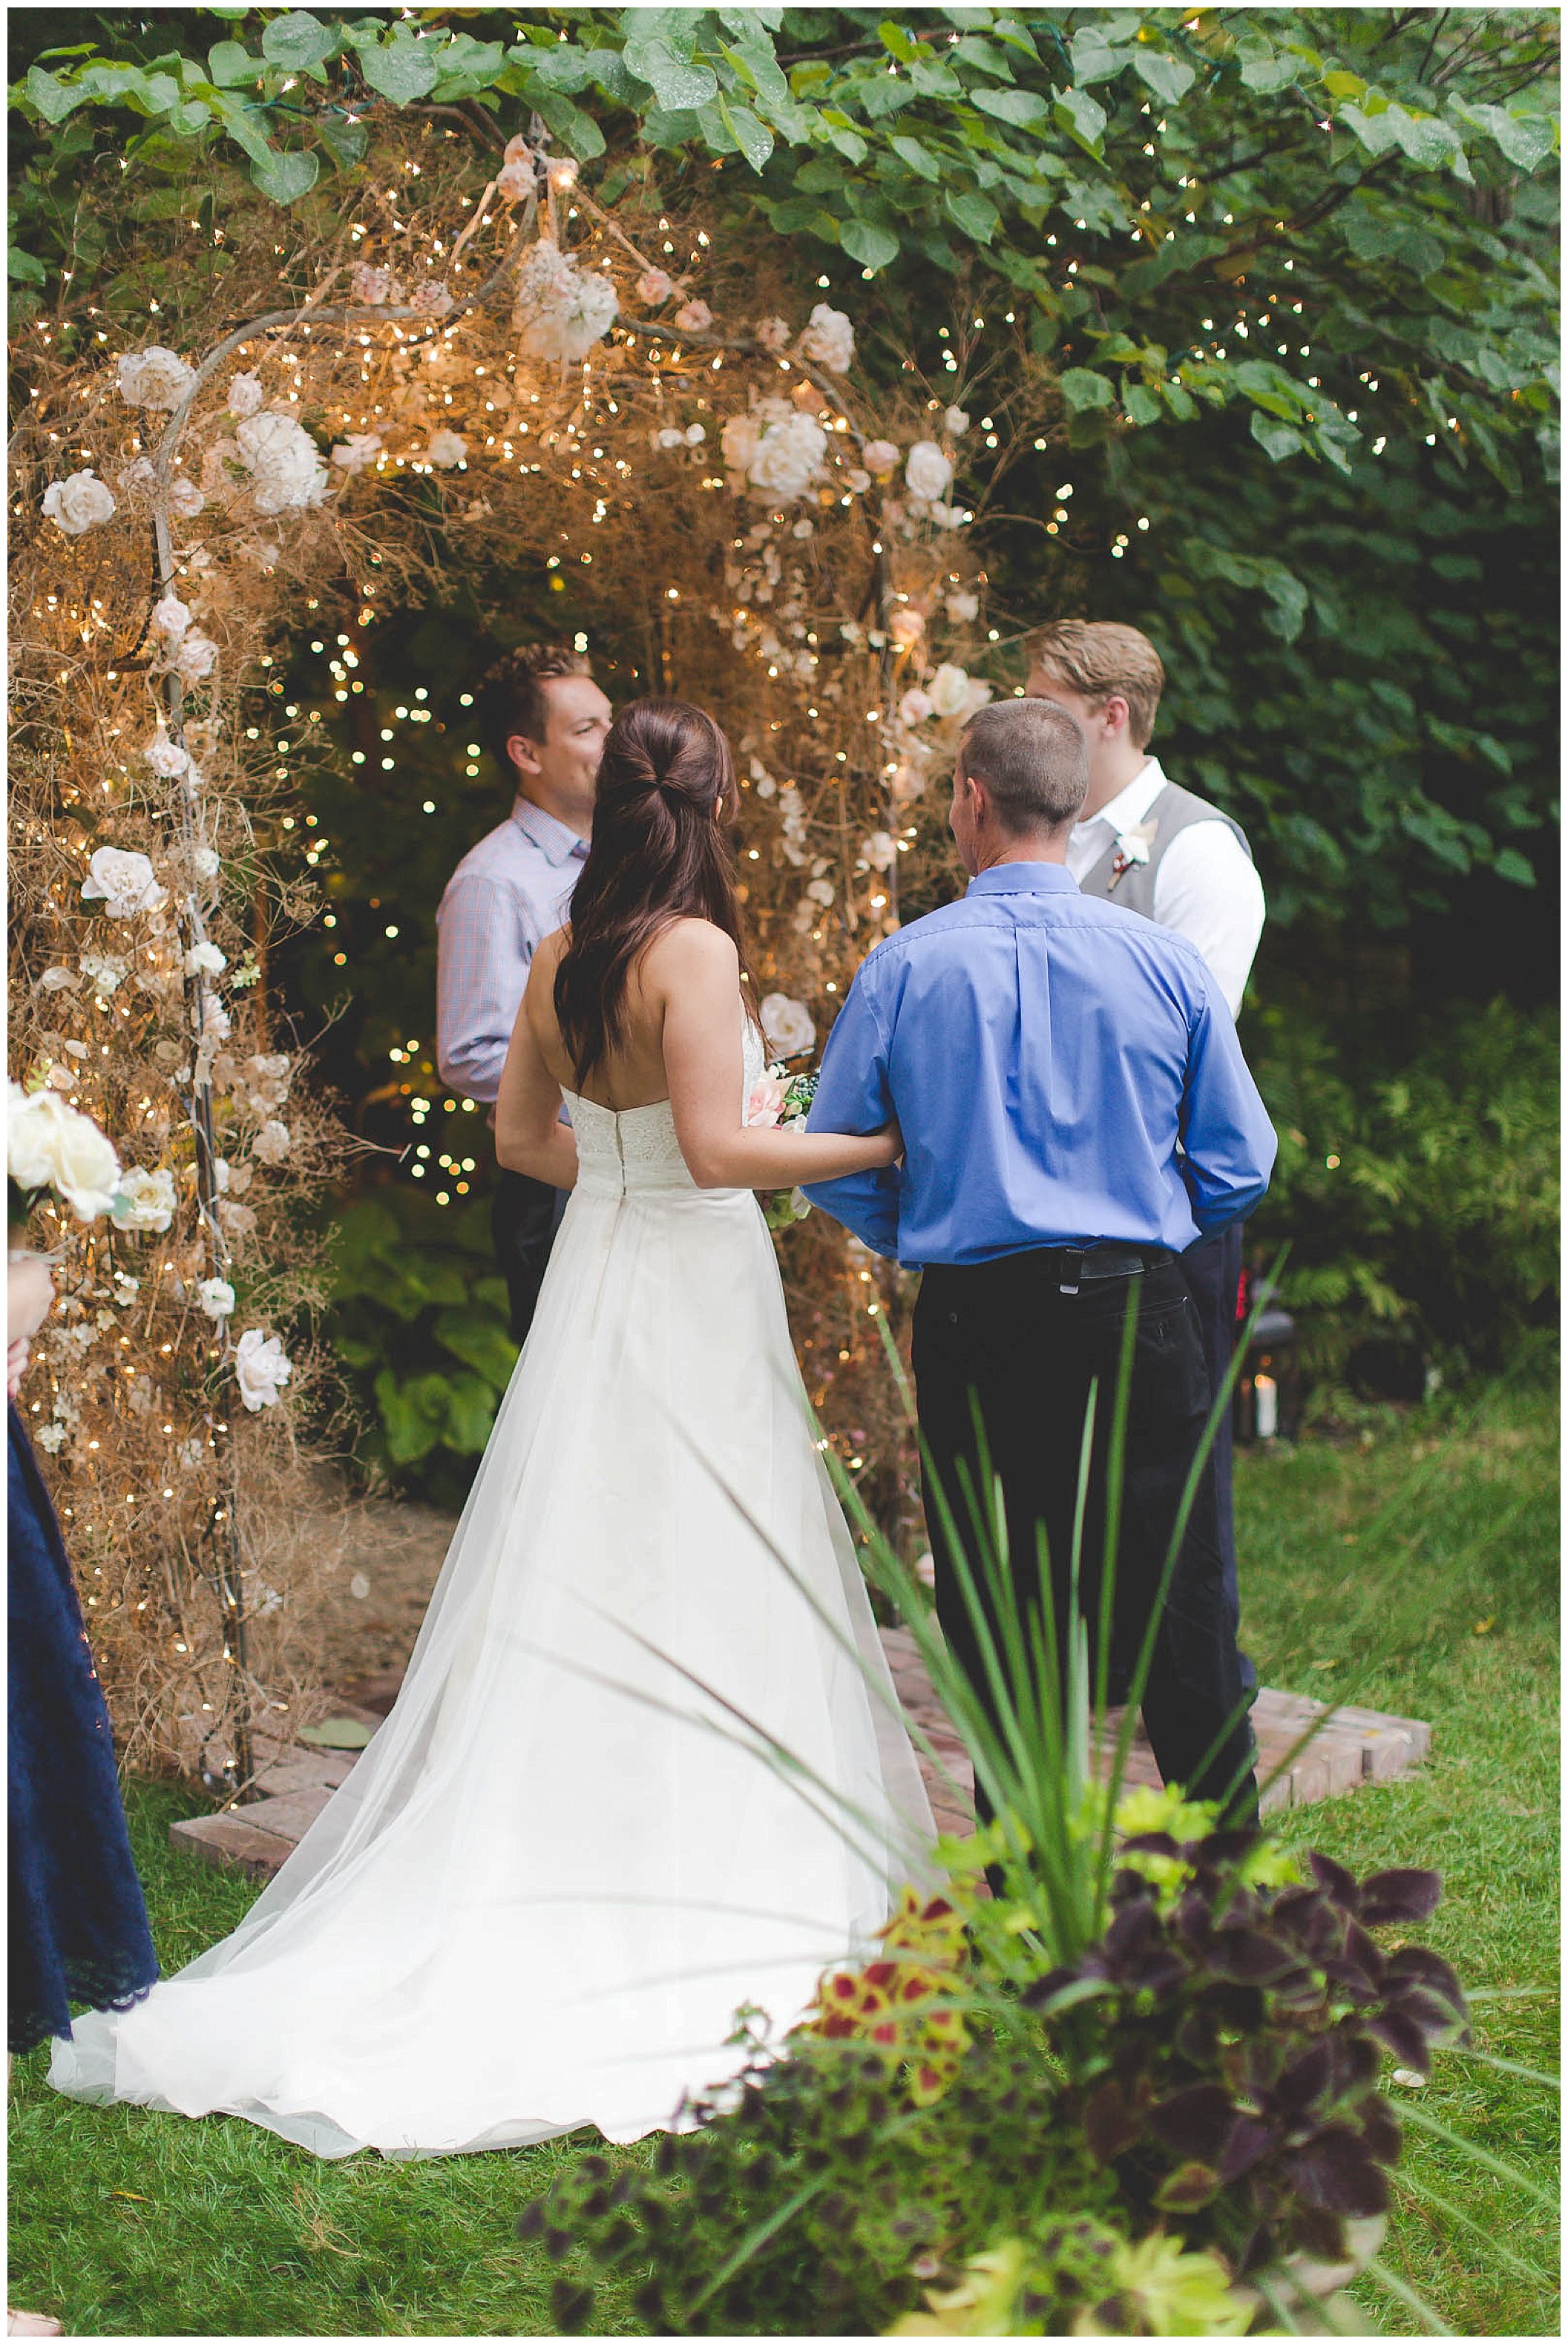 Stunning backyard wedding with twinkly lights, Fort Wayne Indiana Wedding Photographer_0011.jpg